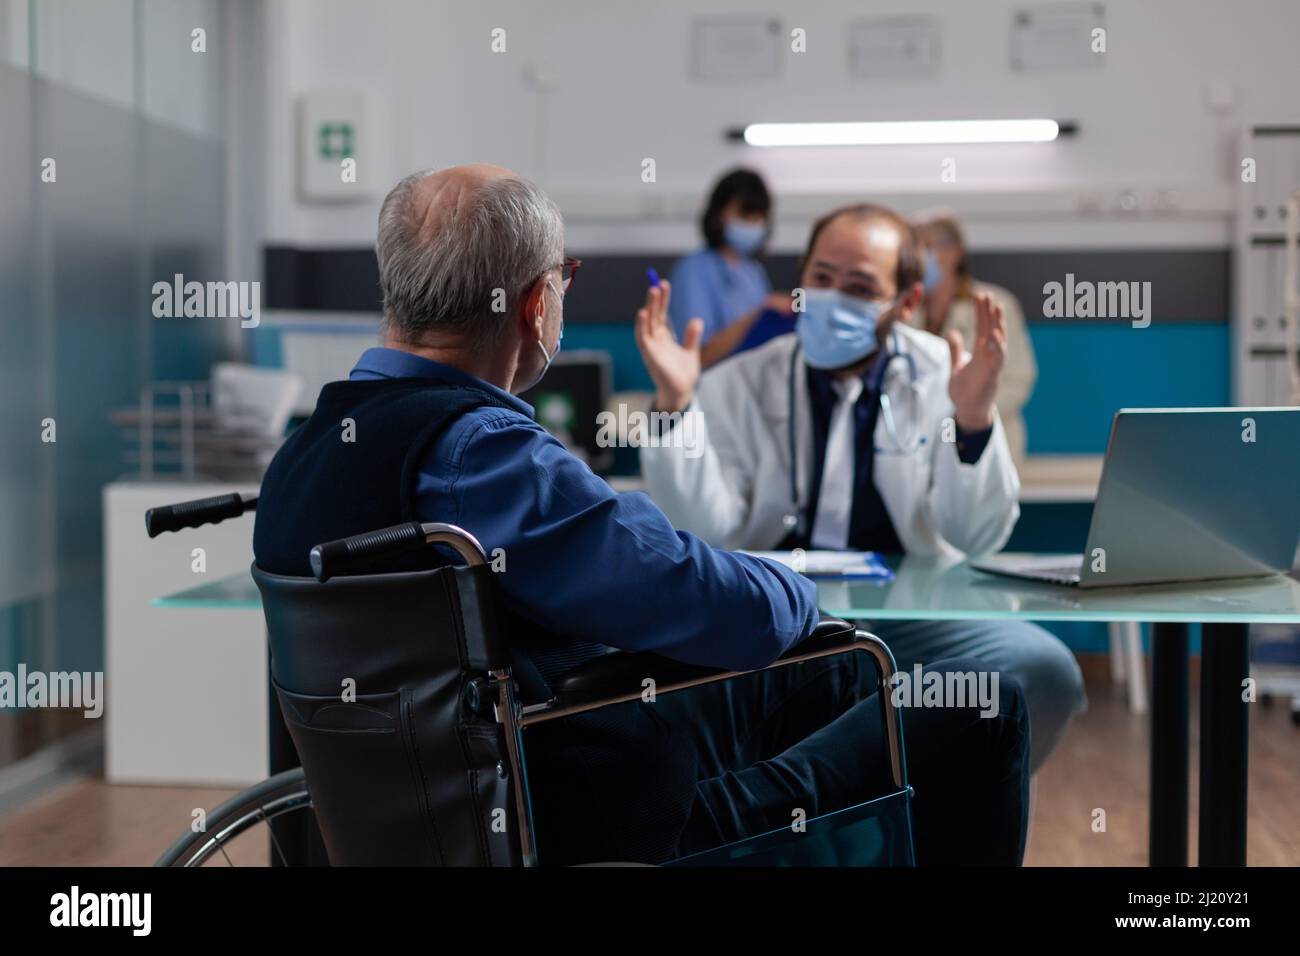 Fachgespräch mit Patient im Rollstuhl bei Termin zur Untersuchung während einer Pandemie. Ein Arzt und ein älterer Mann mit Gesichtsmaske machen eine Untersuchung und geben dem Patienten mit körperlicher Behinderung Ratschläge Stockfoto